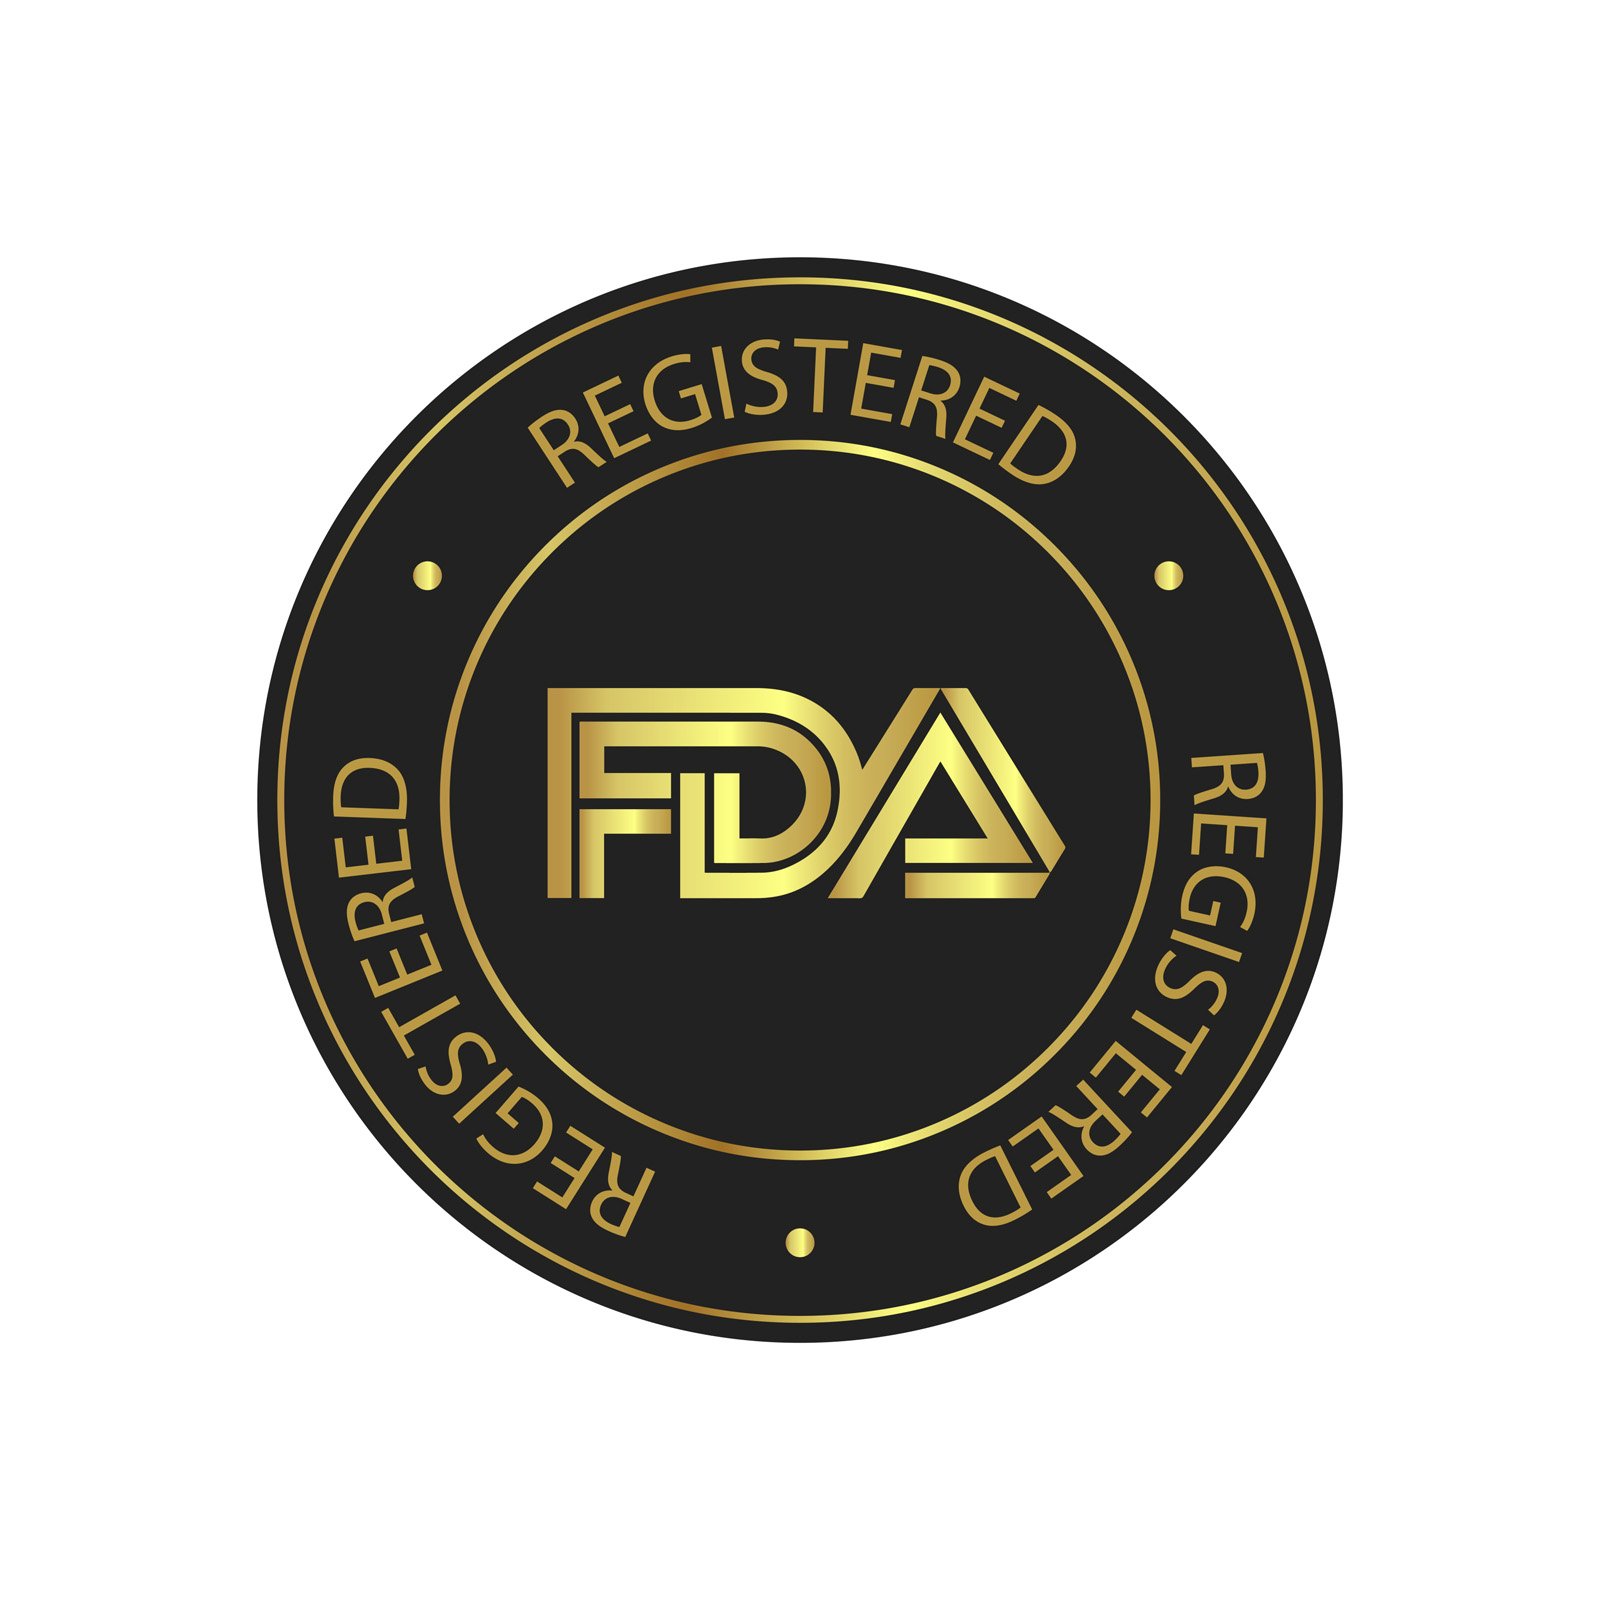 FDA-Registered-Mark